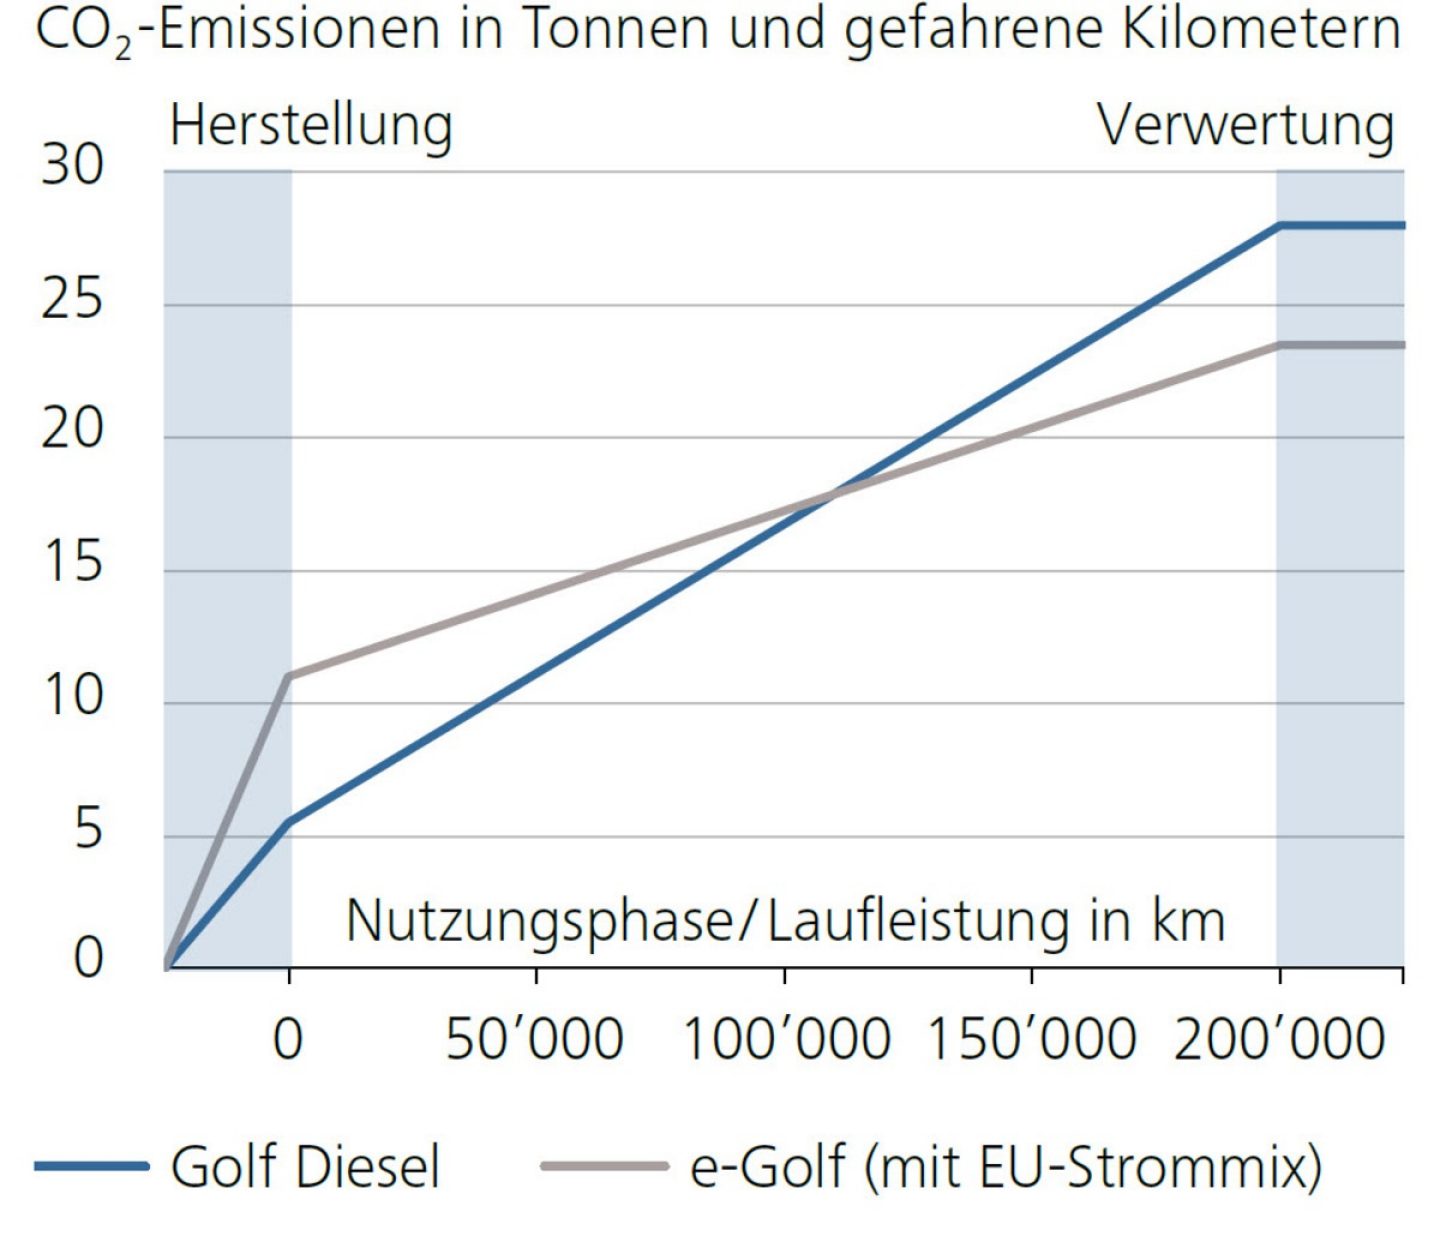 CO2-Emissionen in Tonnen und gefahrene Kilometern